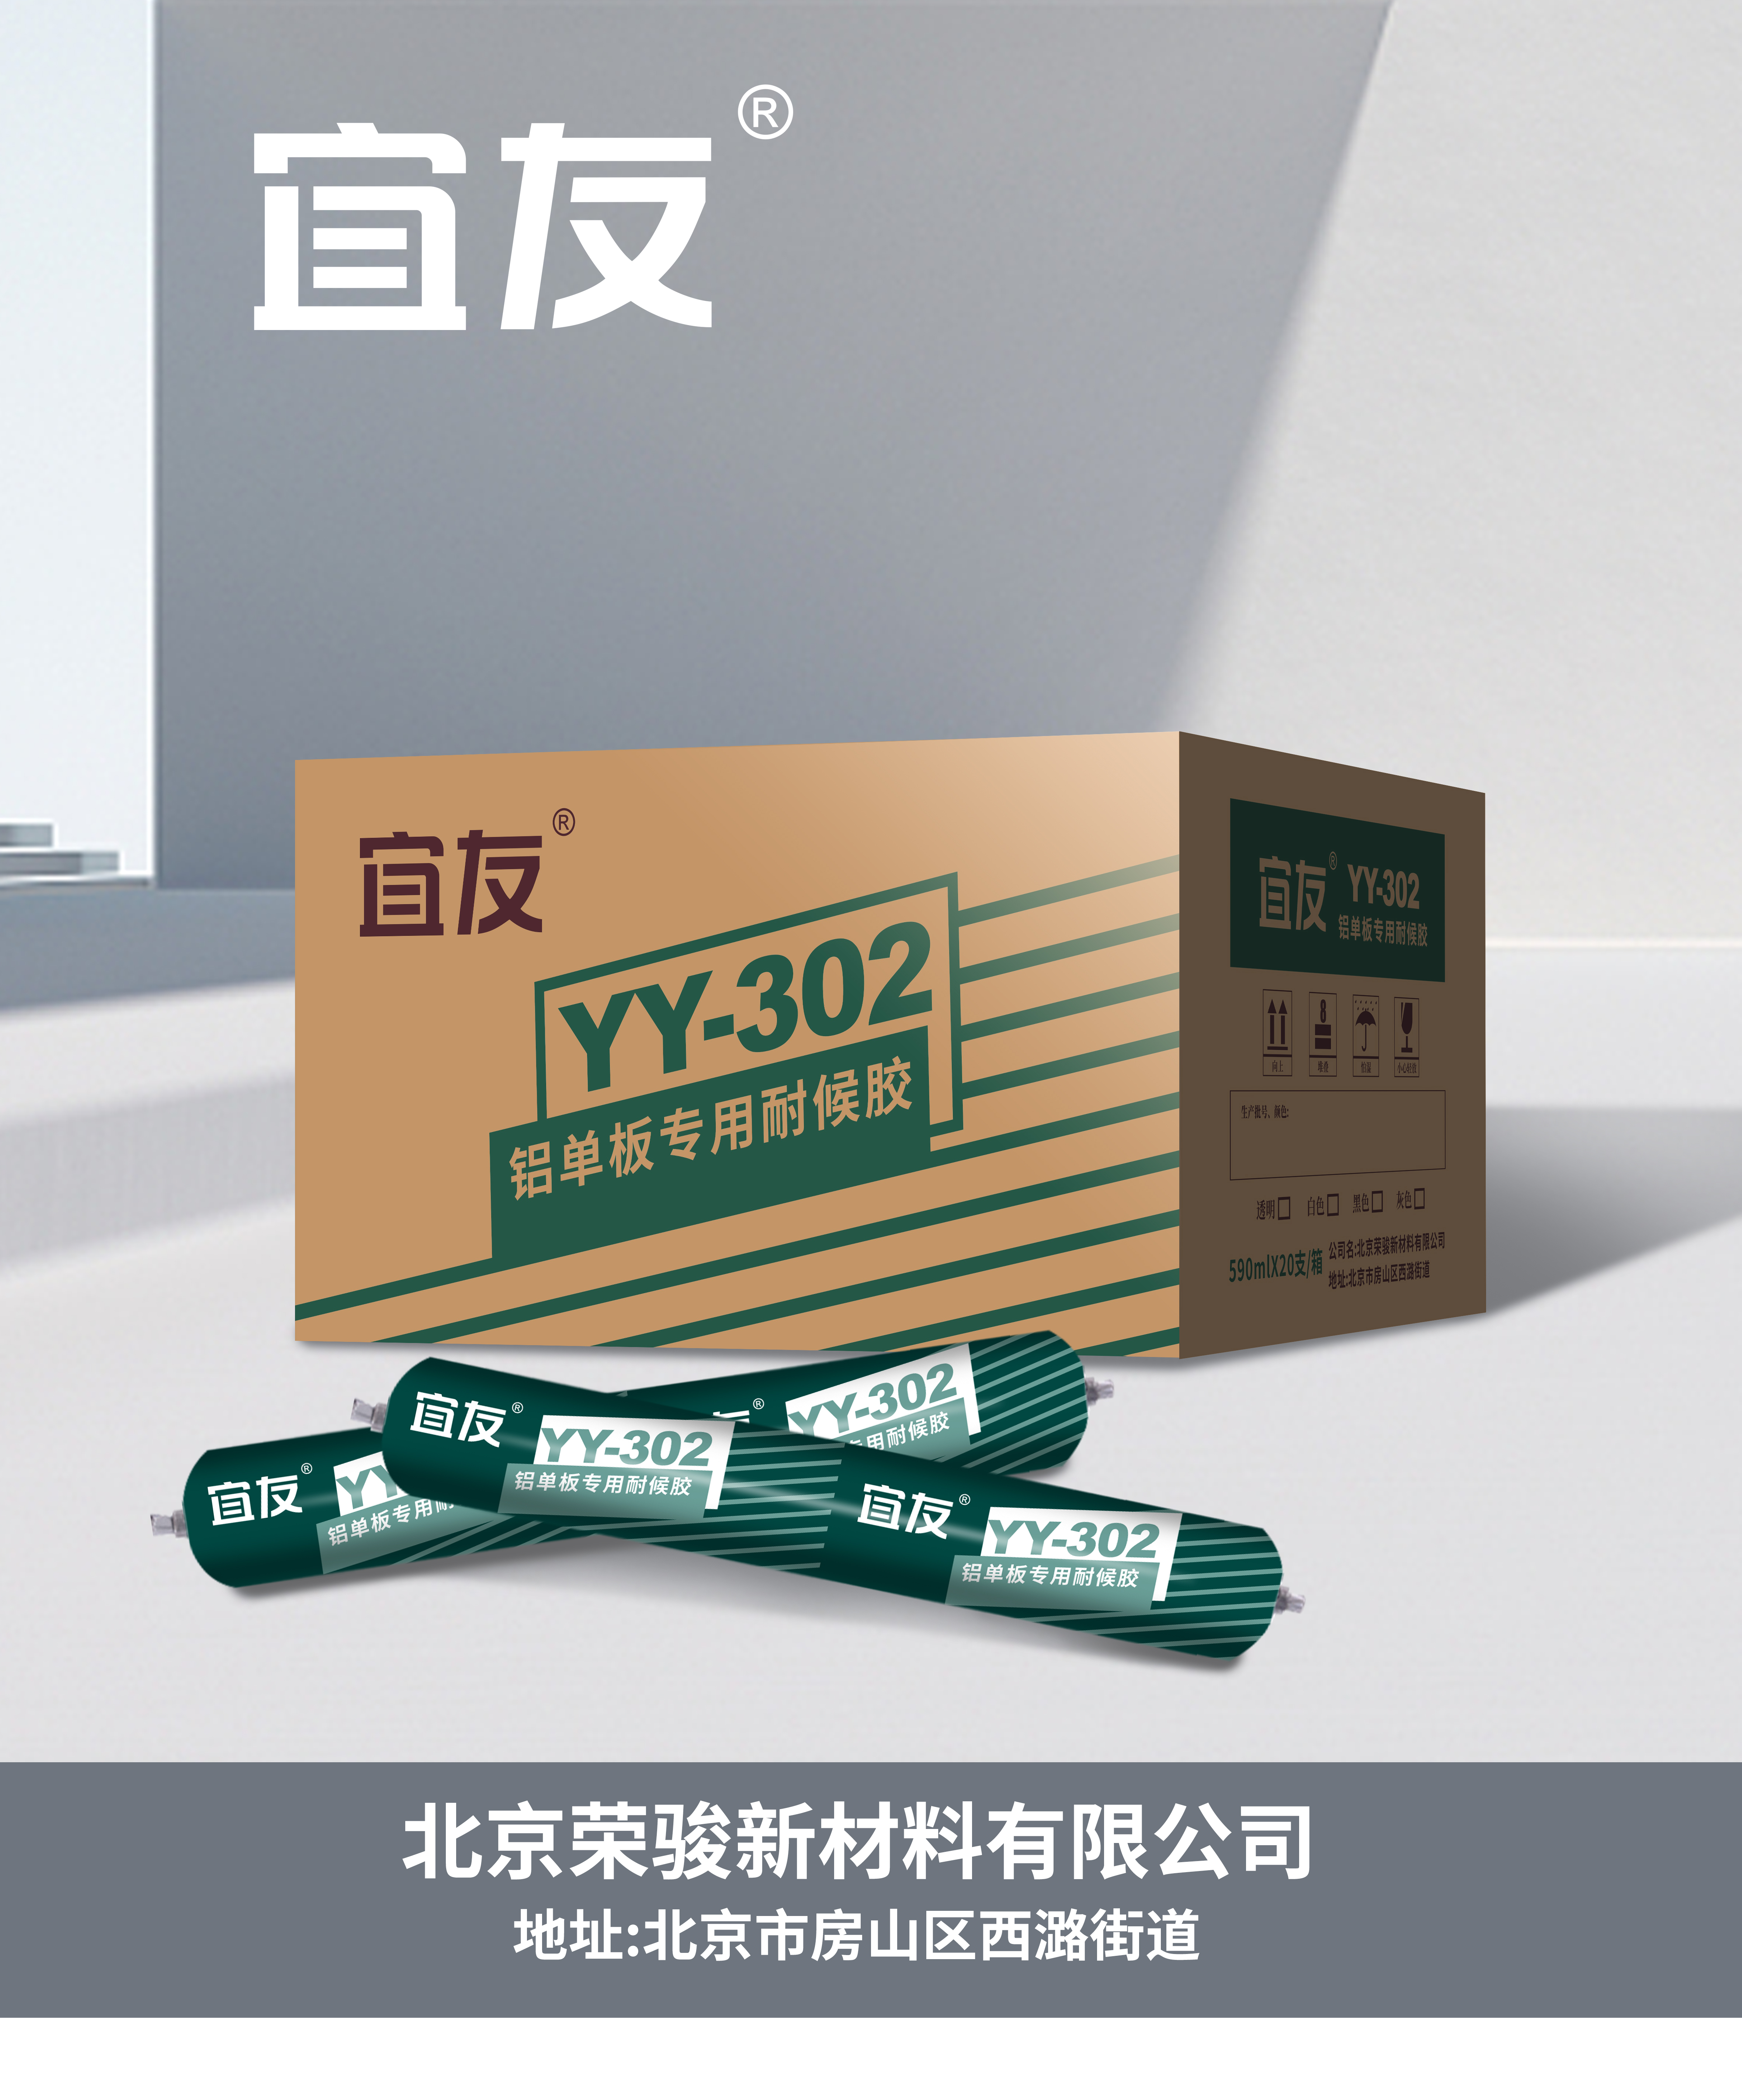 YY-302鋁單板專用耐候膠